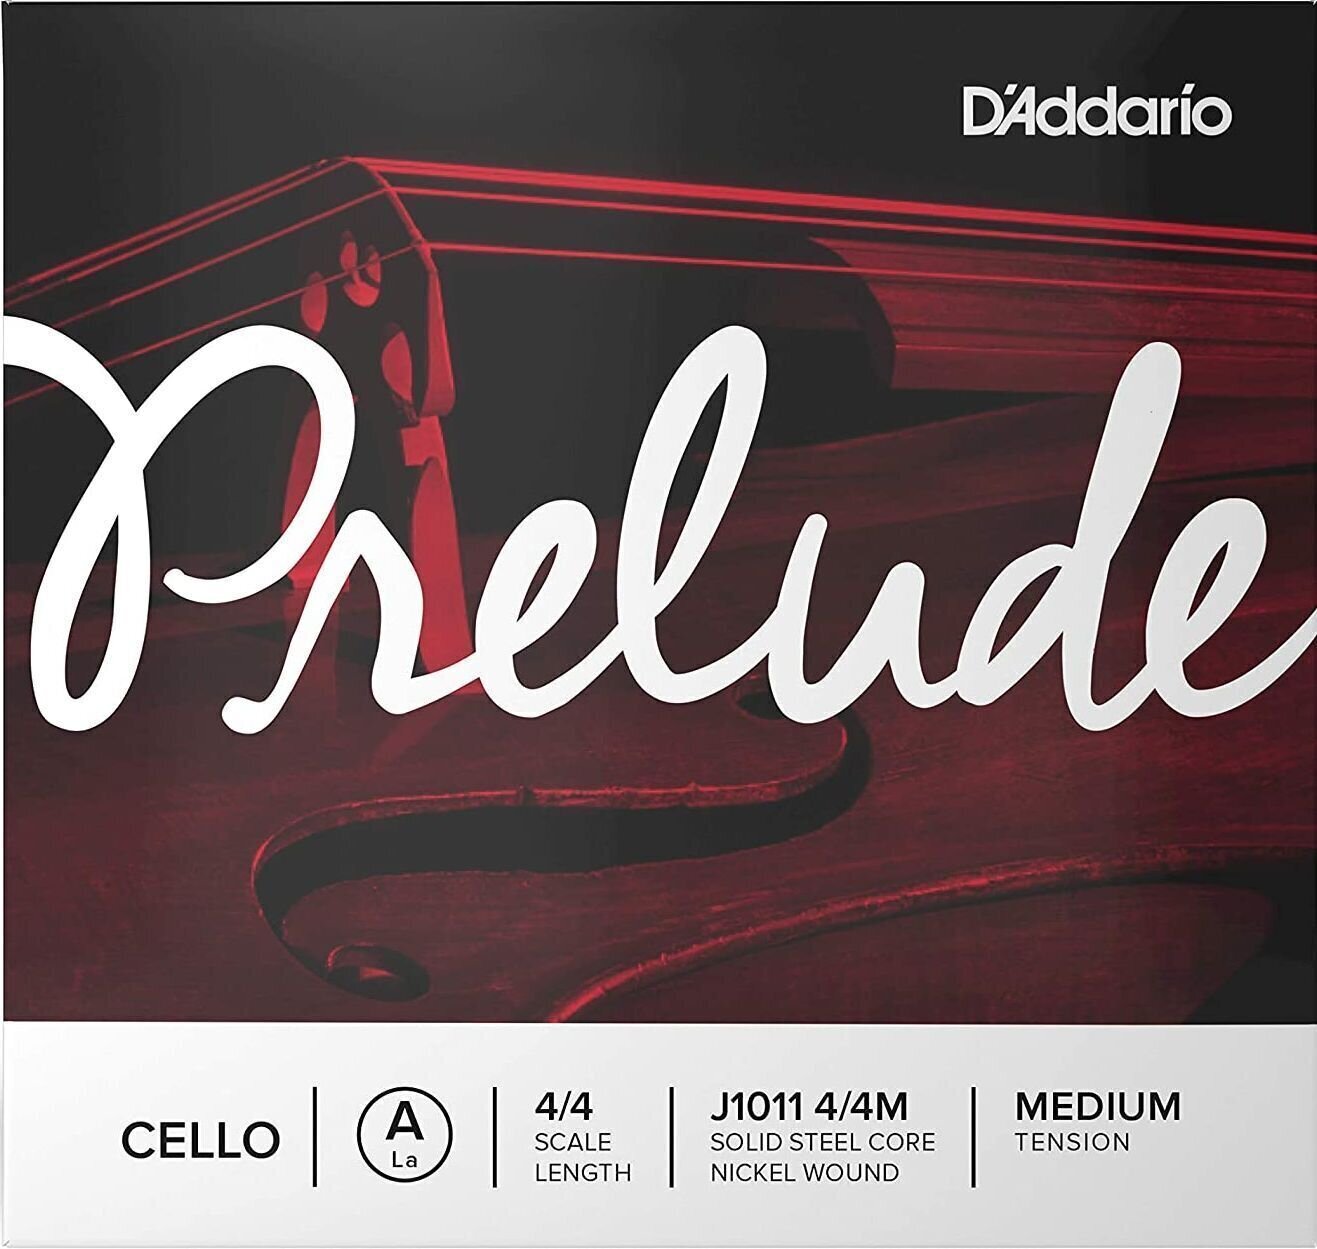 Snaren voor cello D'Addario J1011 4/4M Prelude Snaren voor cello